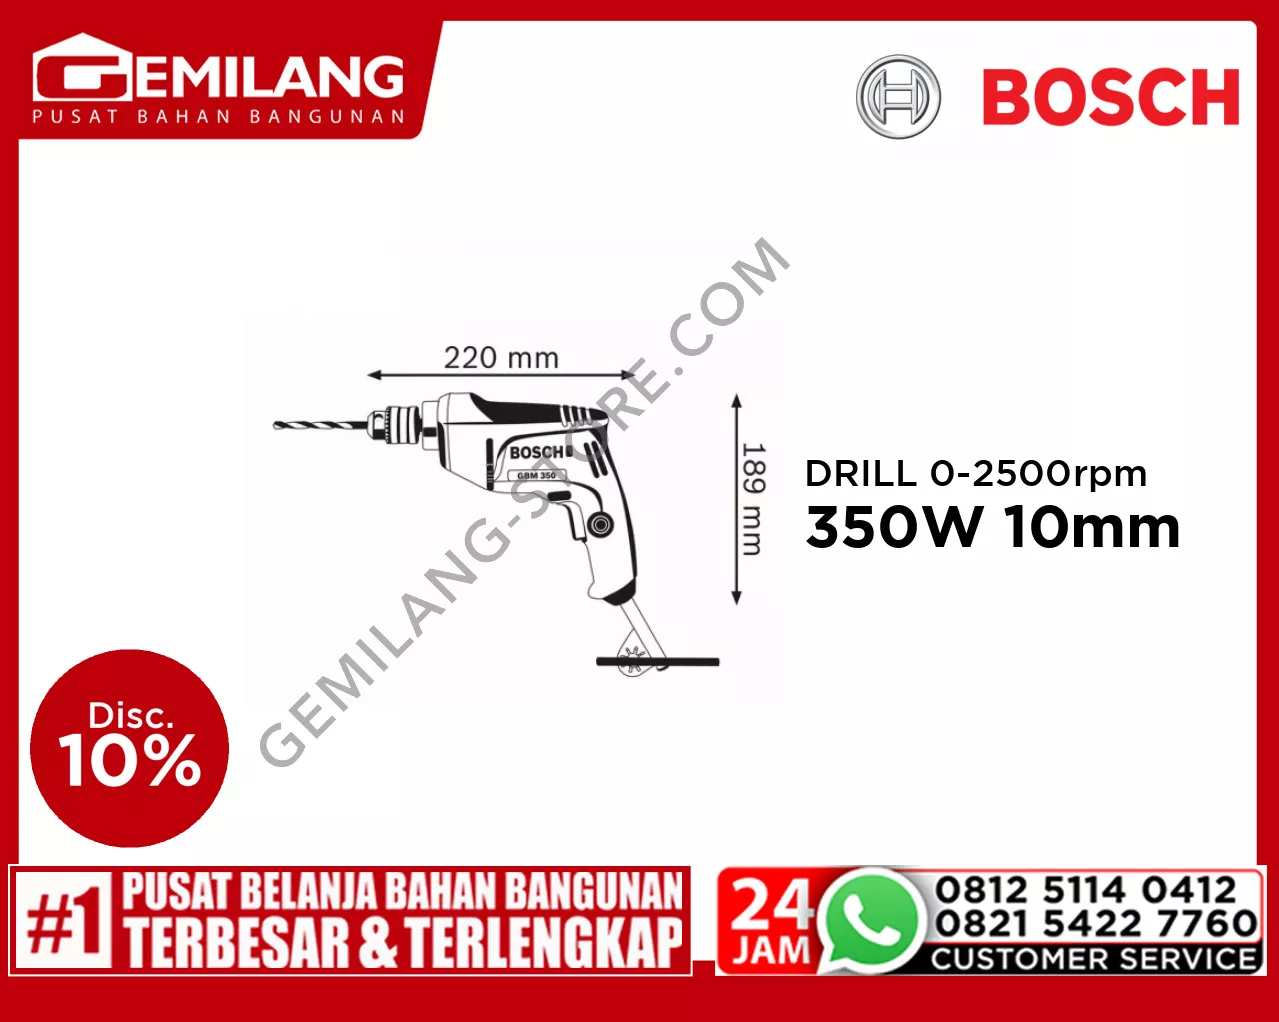 BOSCH DRILL GBM 350RE 350W 0-2500rpm 10mm